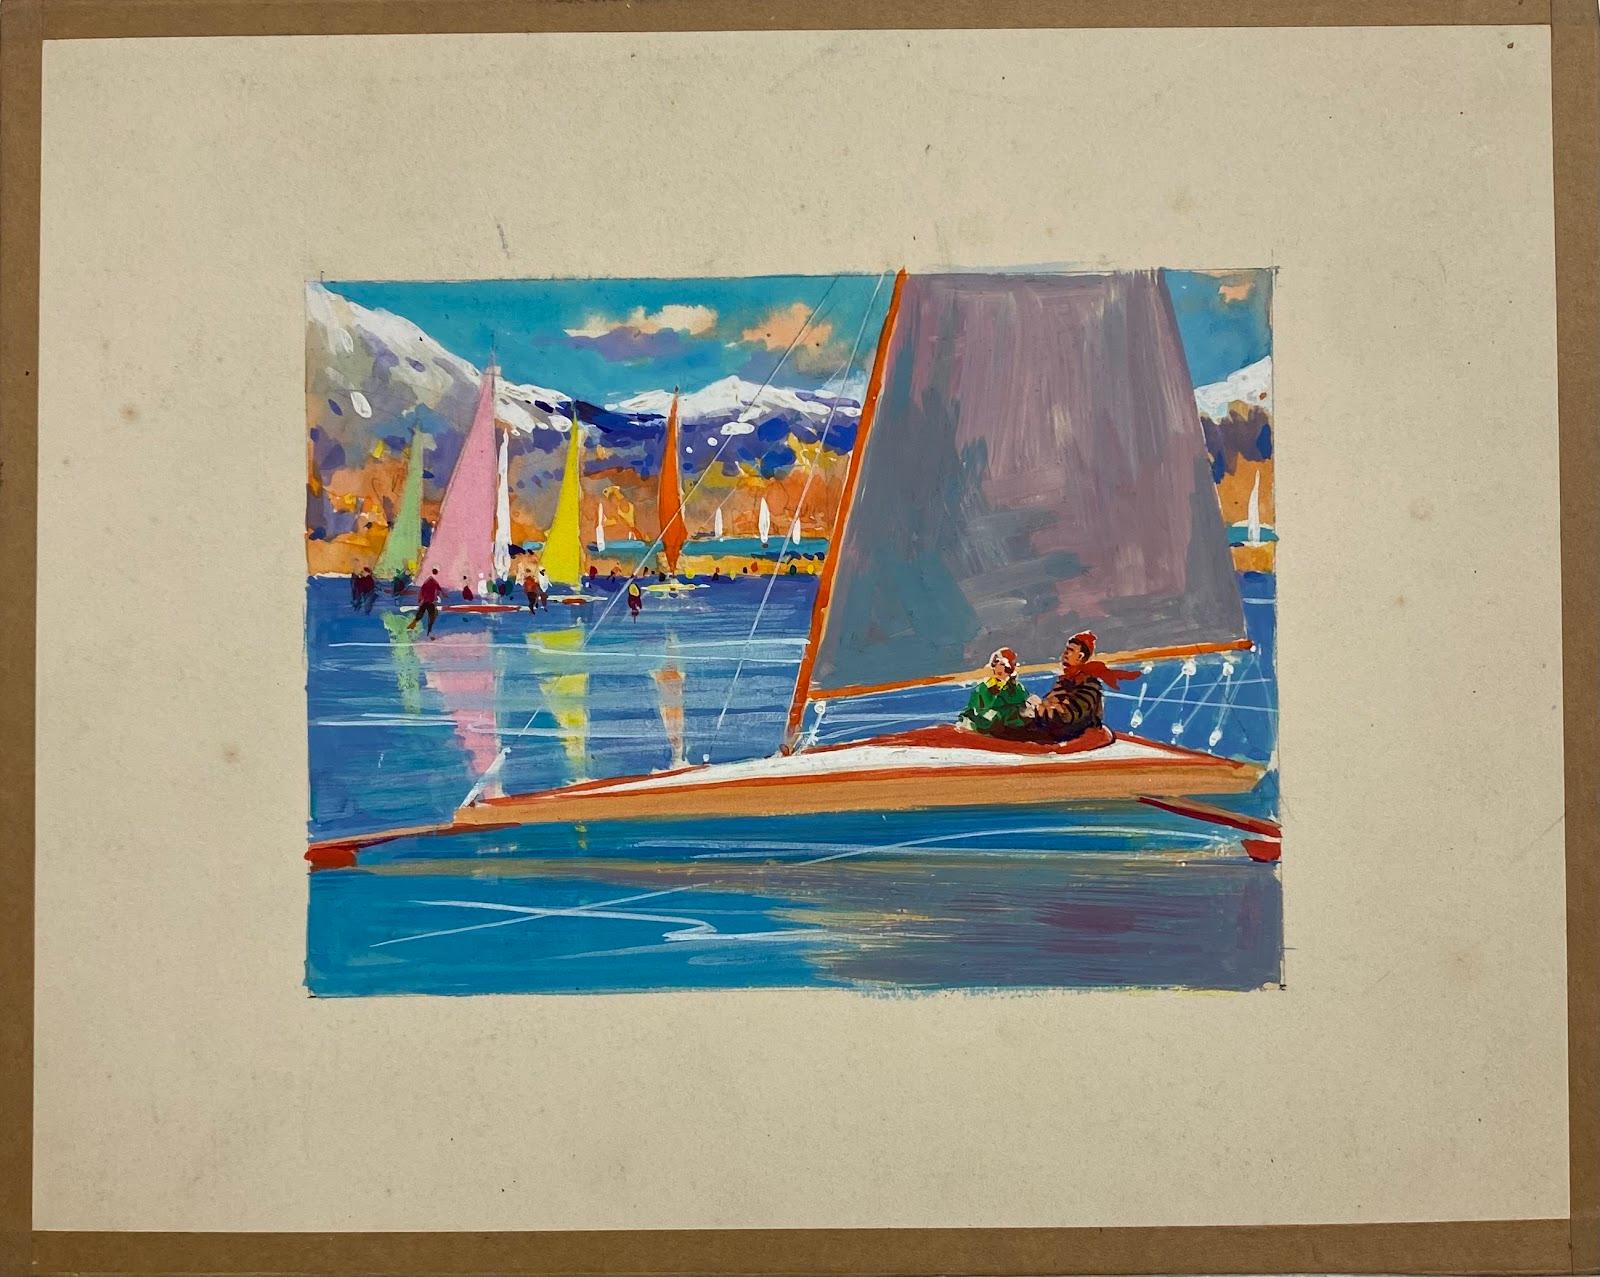 Britisches impressionistisches Gemälde des mittleren 20. Jahrhunderts, mehrfarbiges Sommerbootrennen  – Art von Frank Duffield